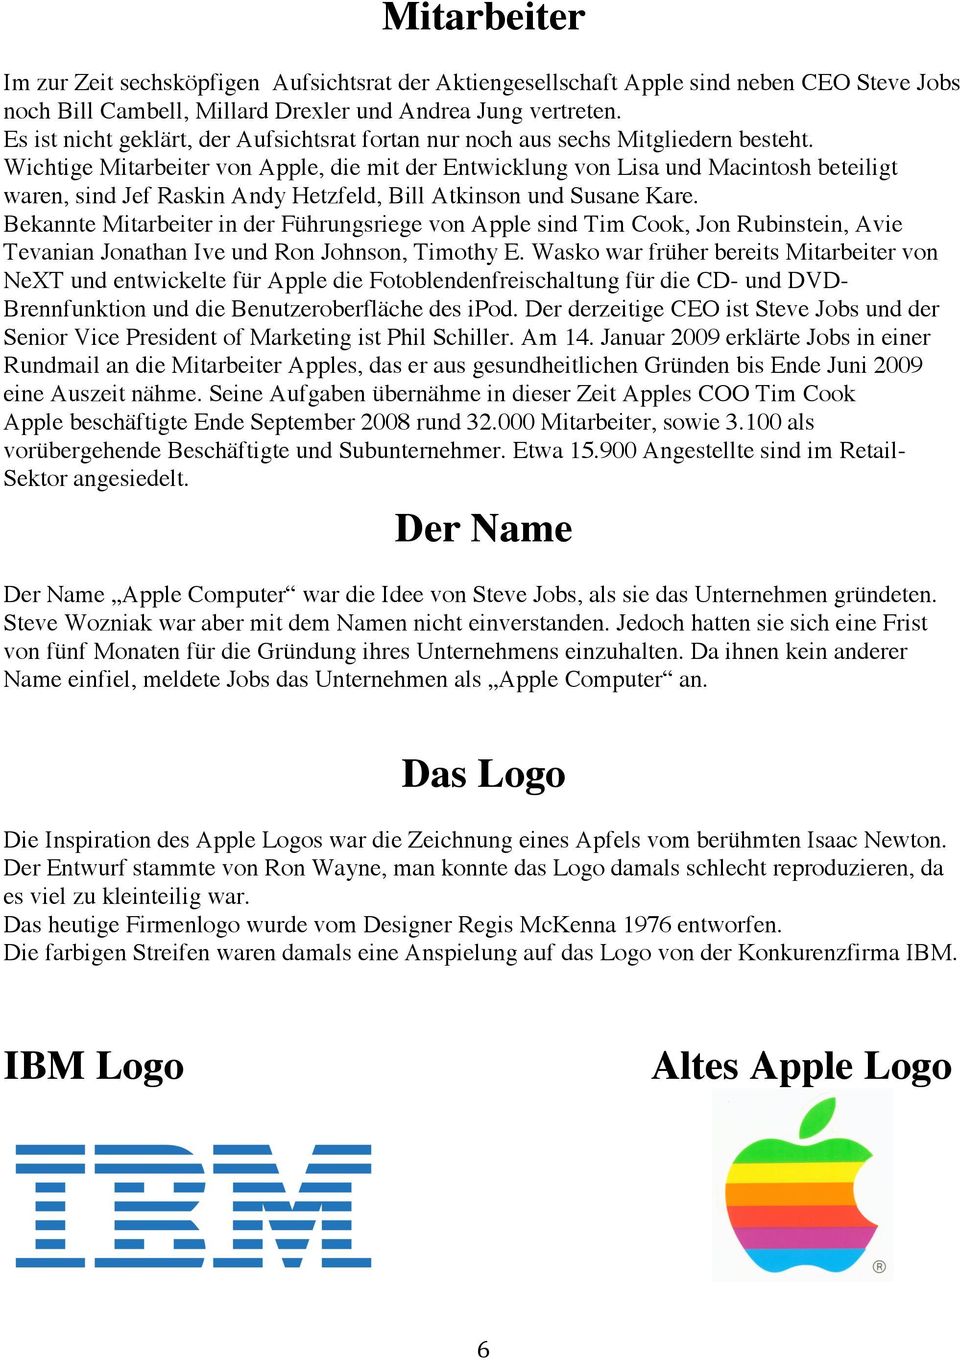 Wichtige Mitarbeiter von Apple, die mit der Entwicklung von Lisa und Macintosh beteiligt waren, sind Jef Raskin Andy Hetzfeld, Bill Atkinson und Susane Kare.